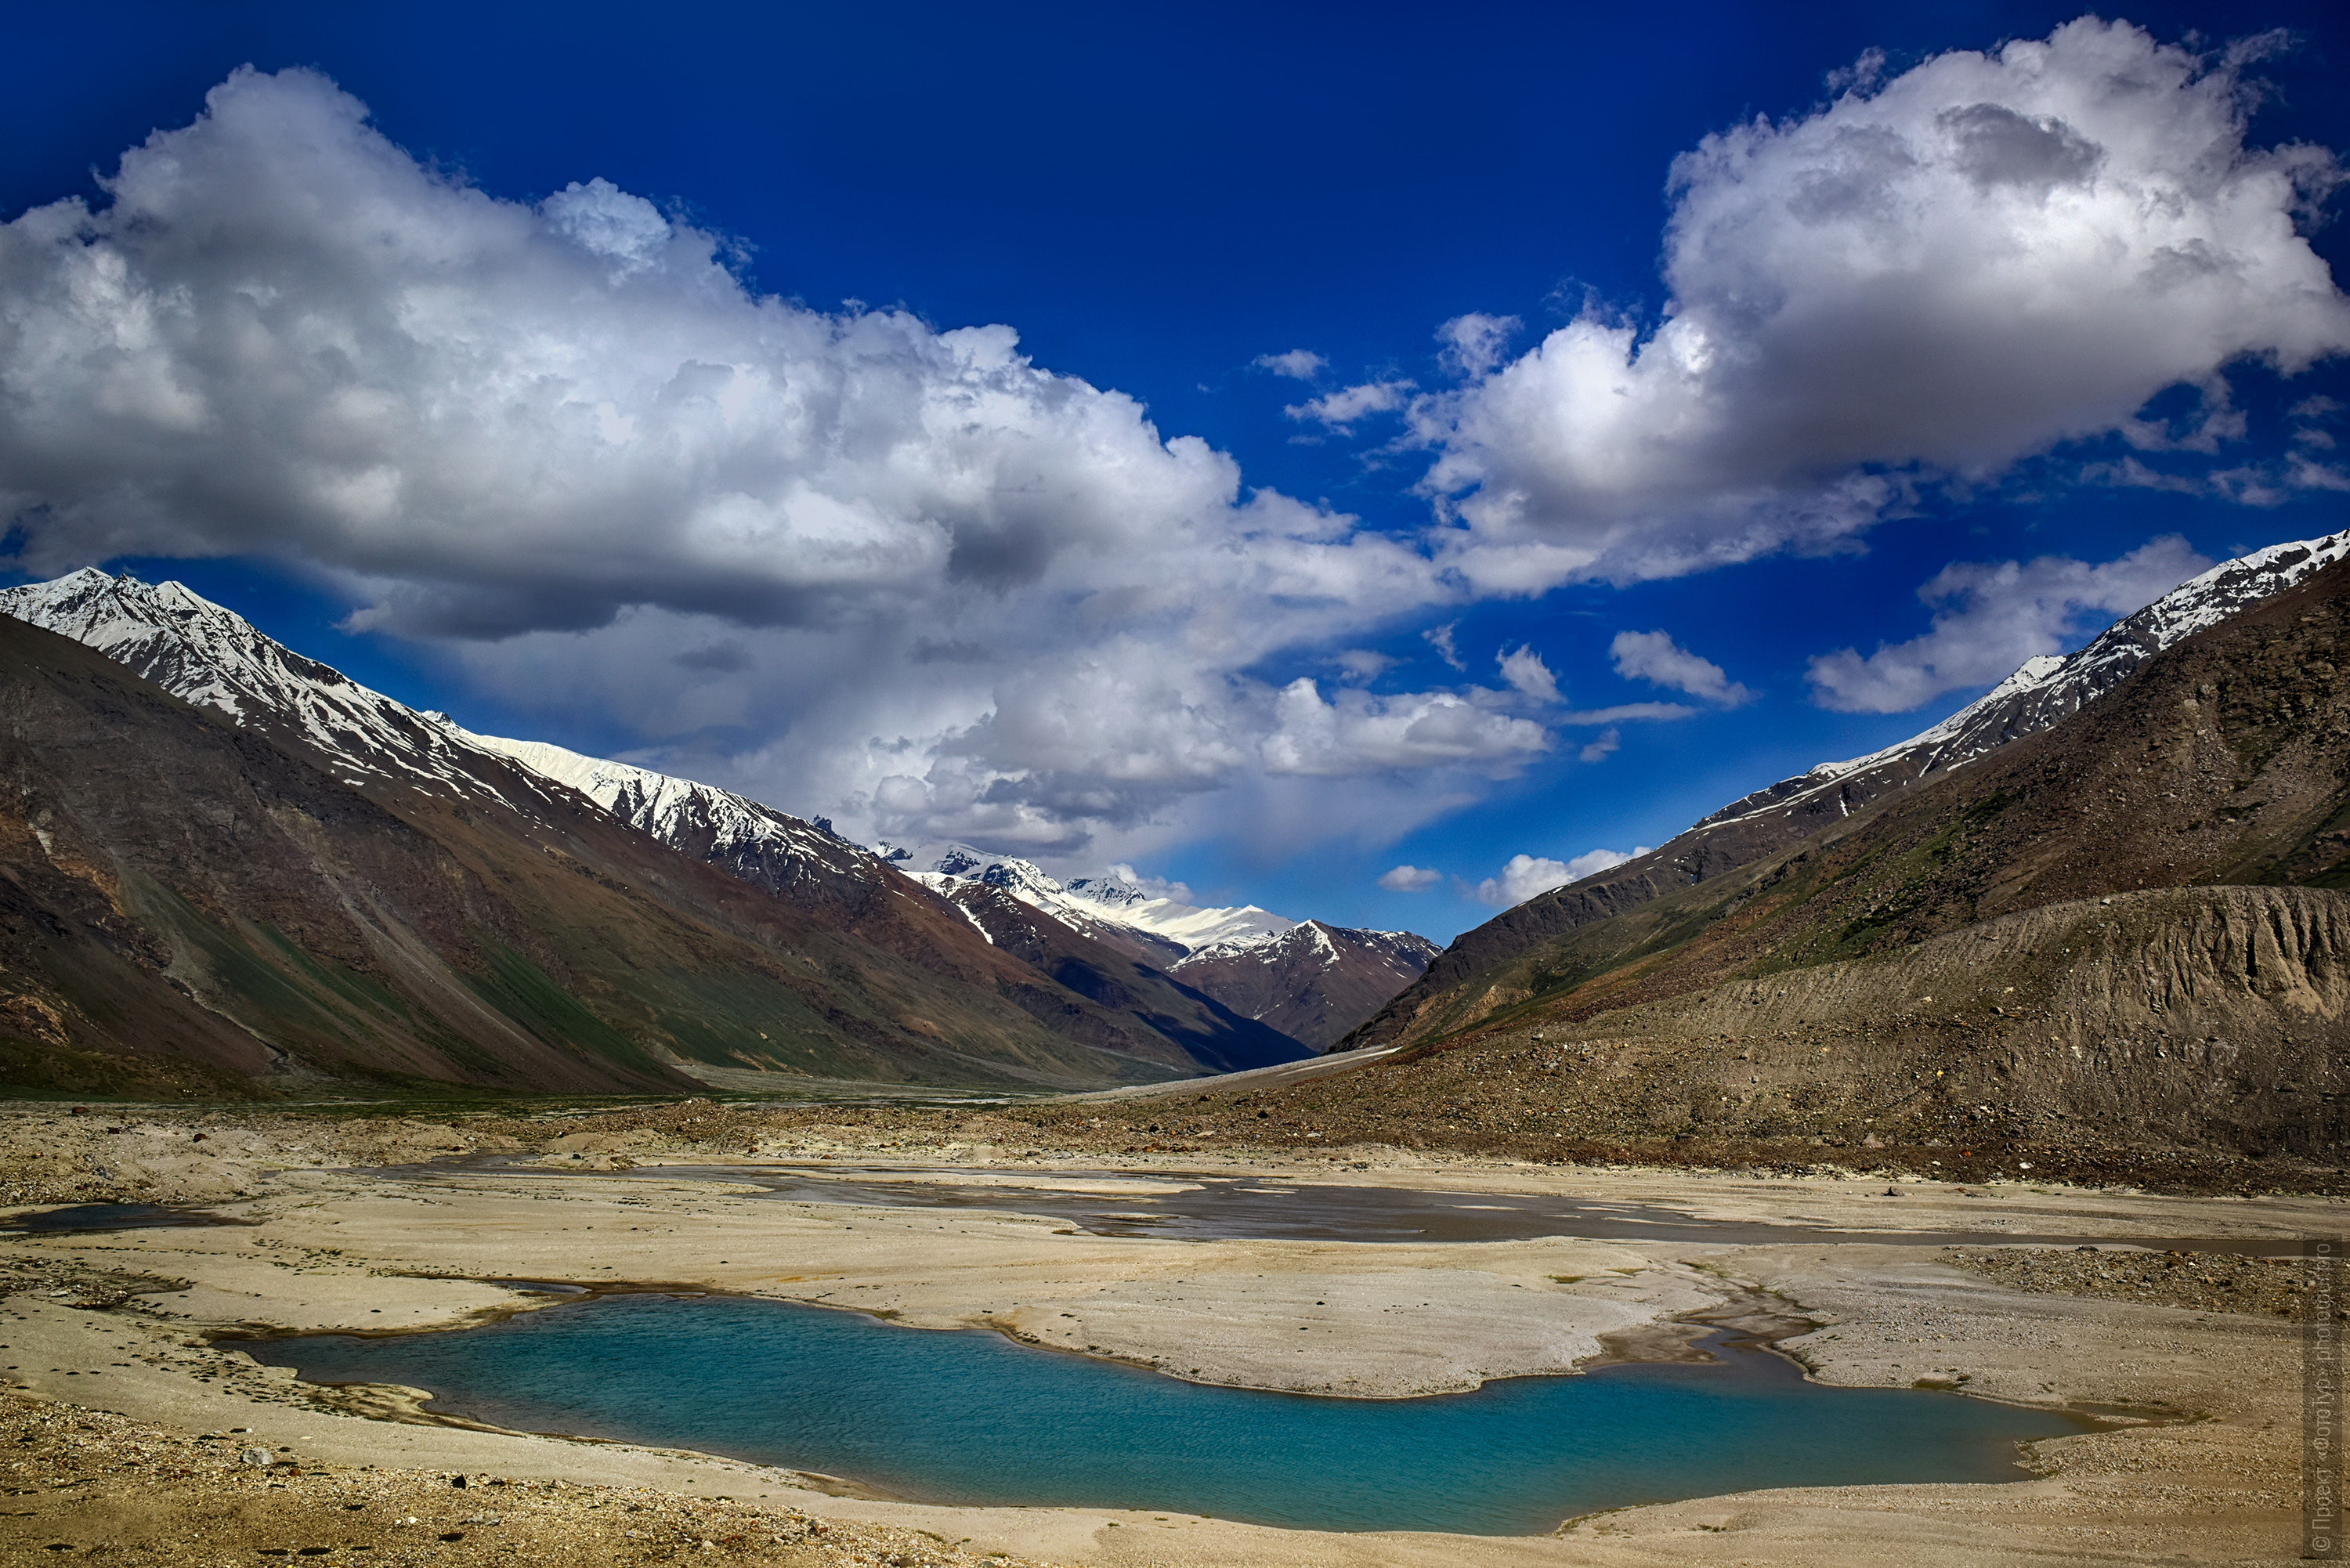 Glacial lake. Budget photo tour Legends of Tibet: Zanskar, September 15 - September 26, 2021.